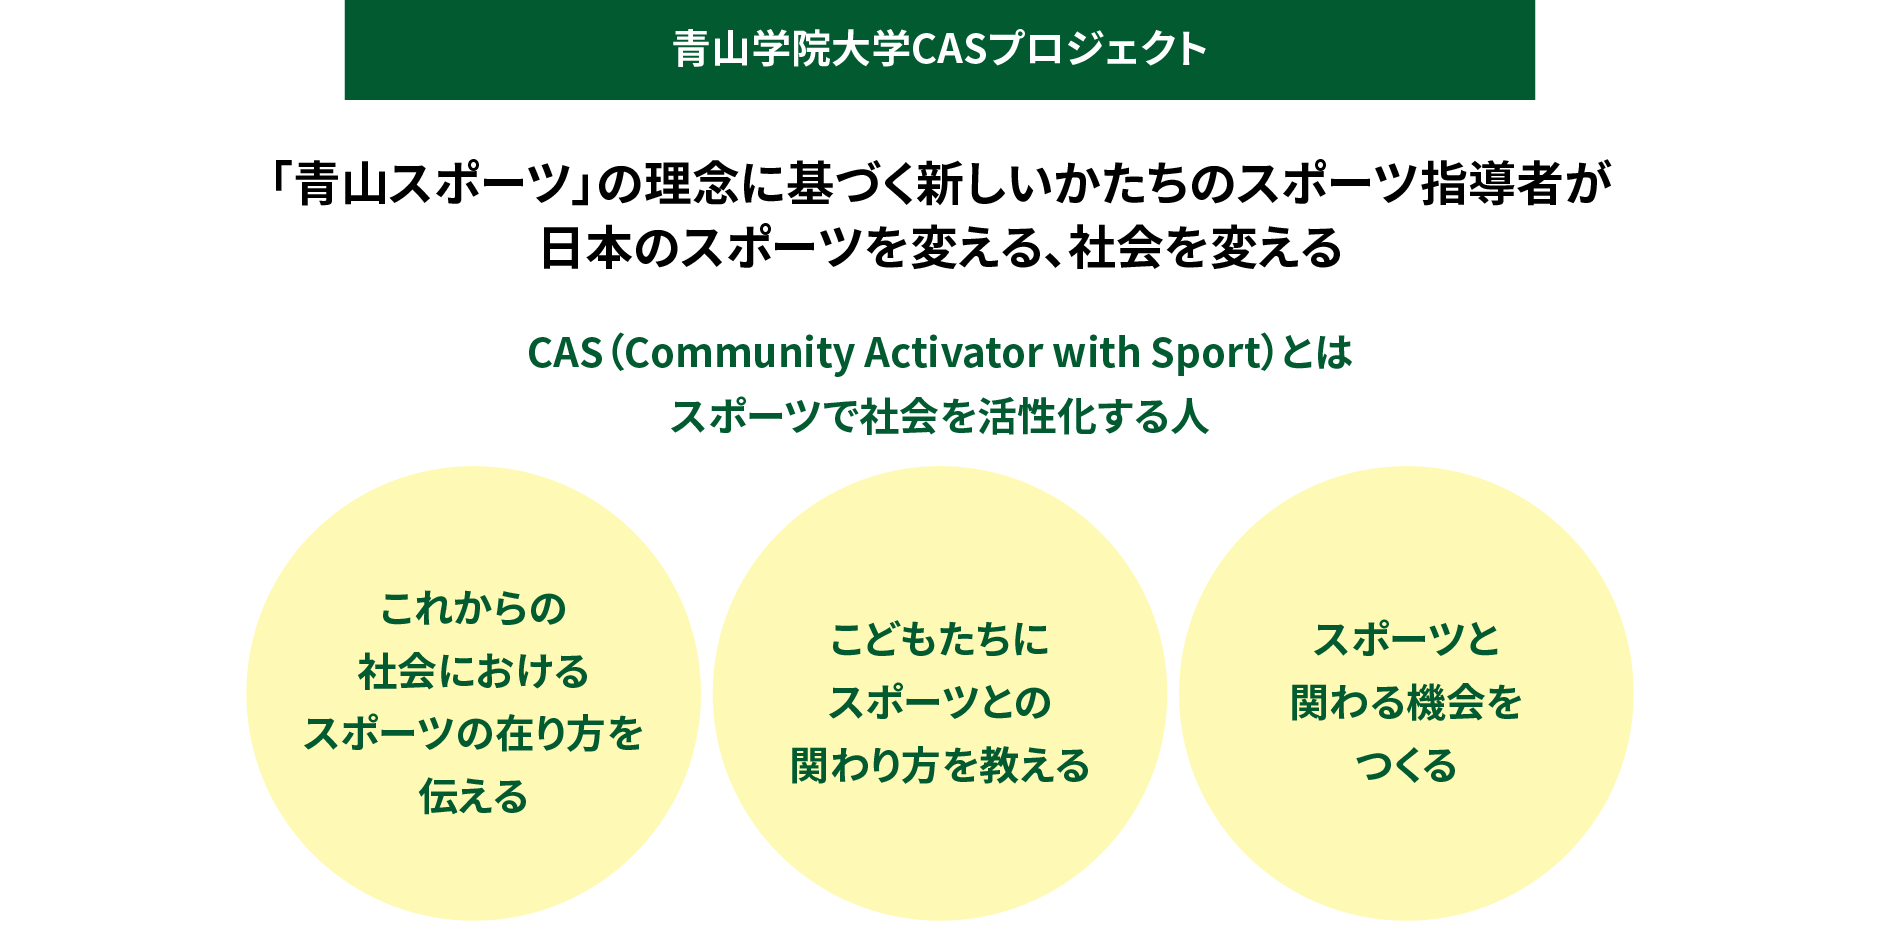 「青山スポーツ」の理念に基づく新しいかたちのスポーツ指導者が日本のスポーツを変える、社会を変える